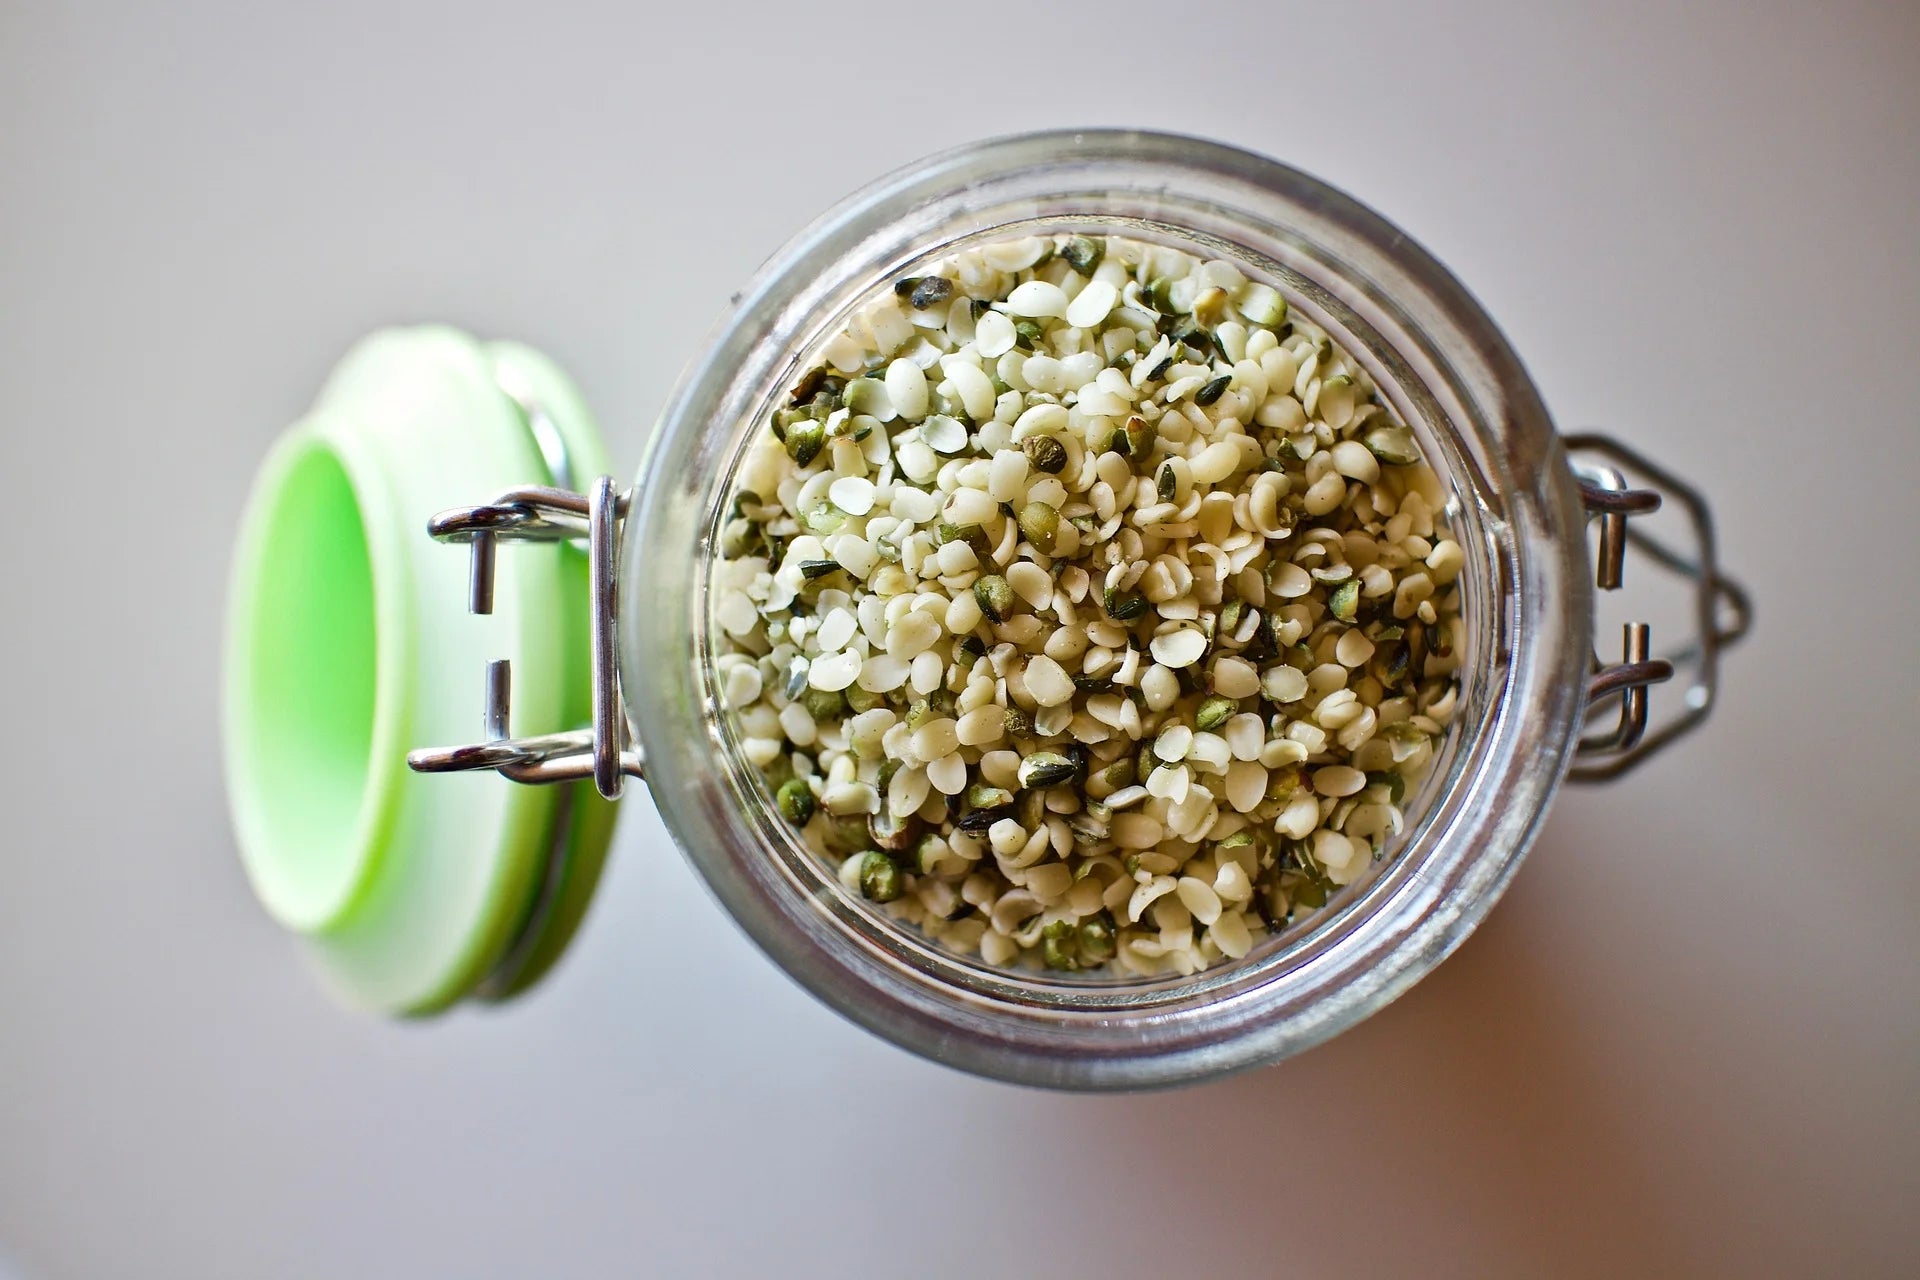 Image of hemp seeds in a jar